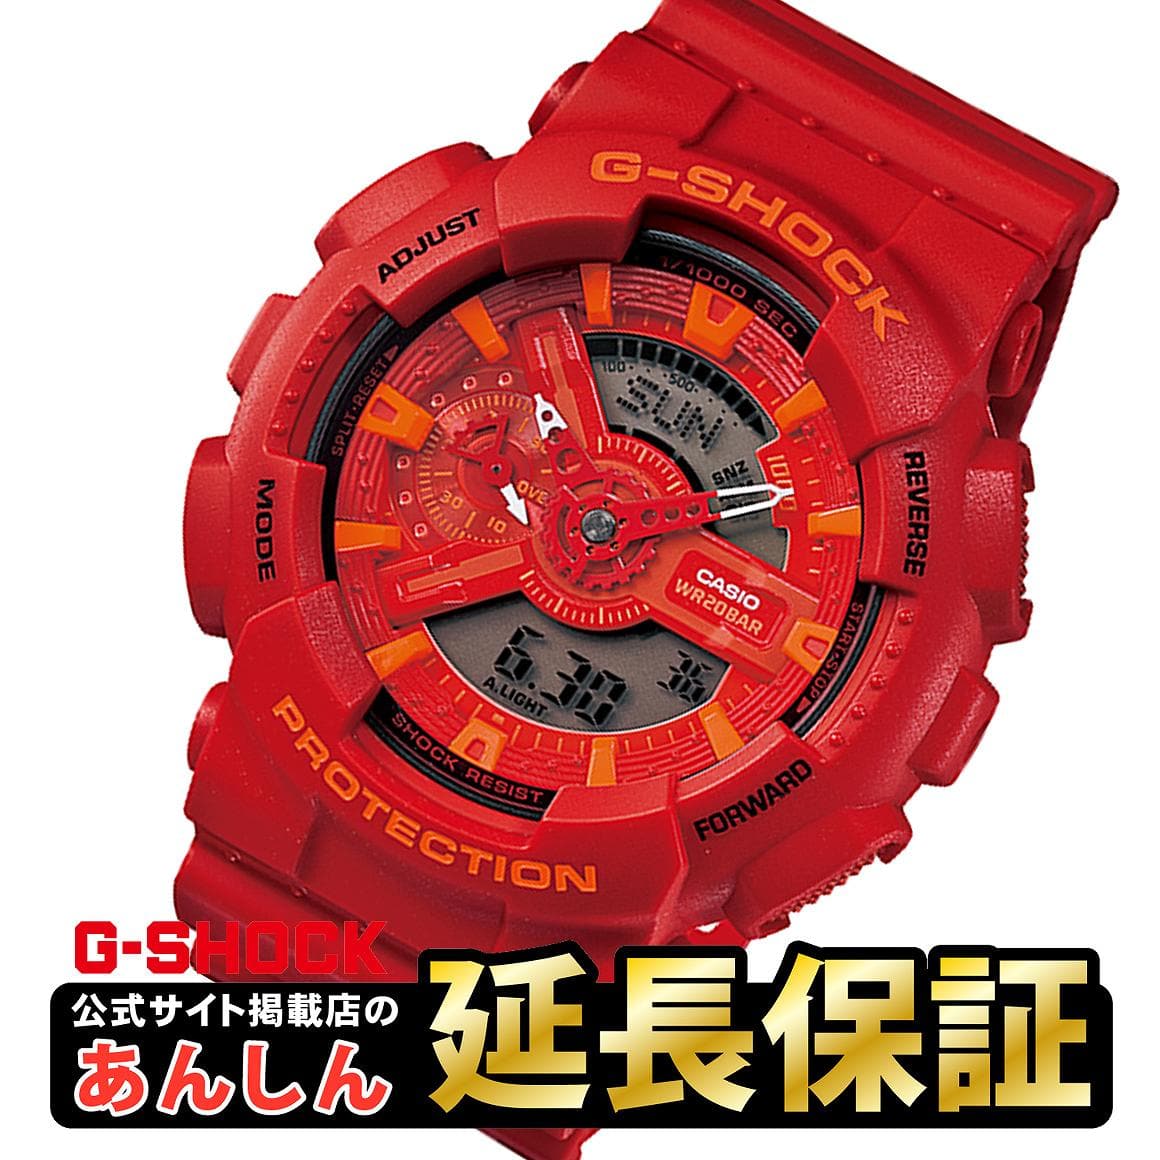 New]Casio G-Shock GA-110AC-4AJF CASIO G-SHOCK mens red - BE